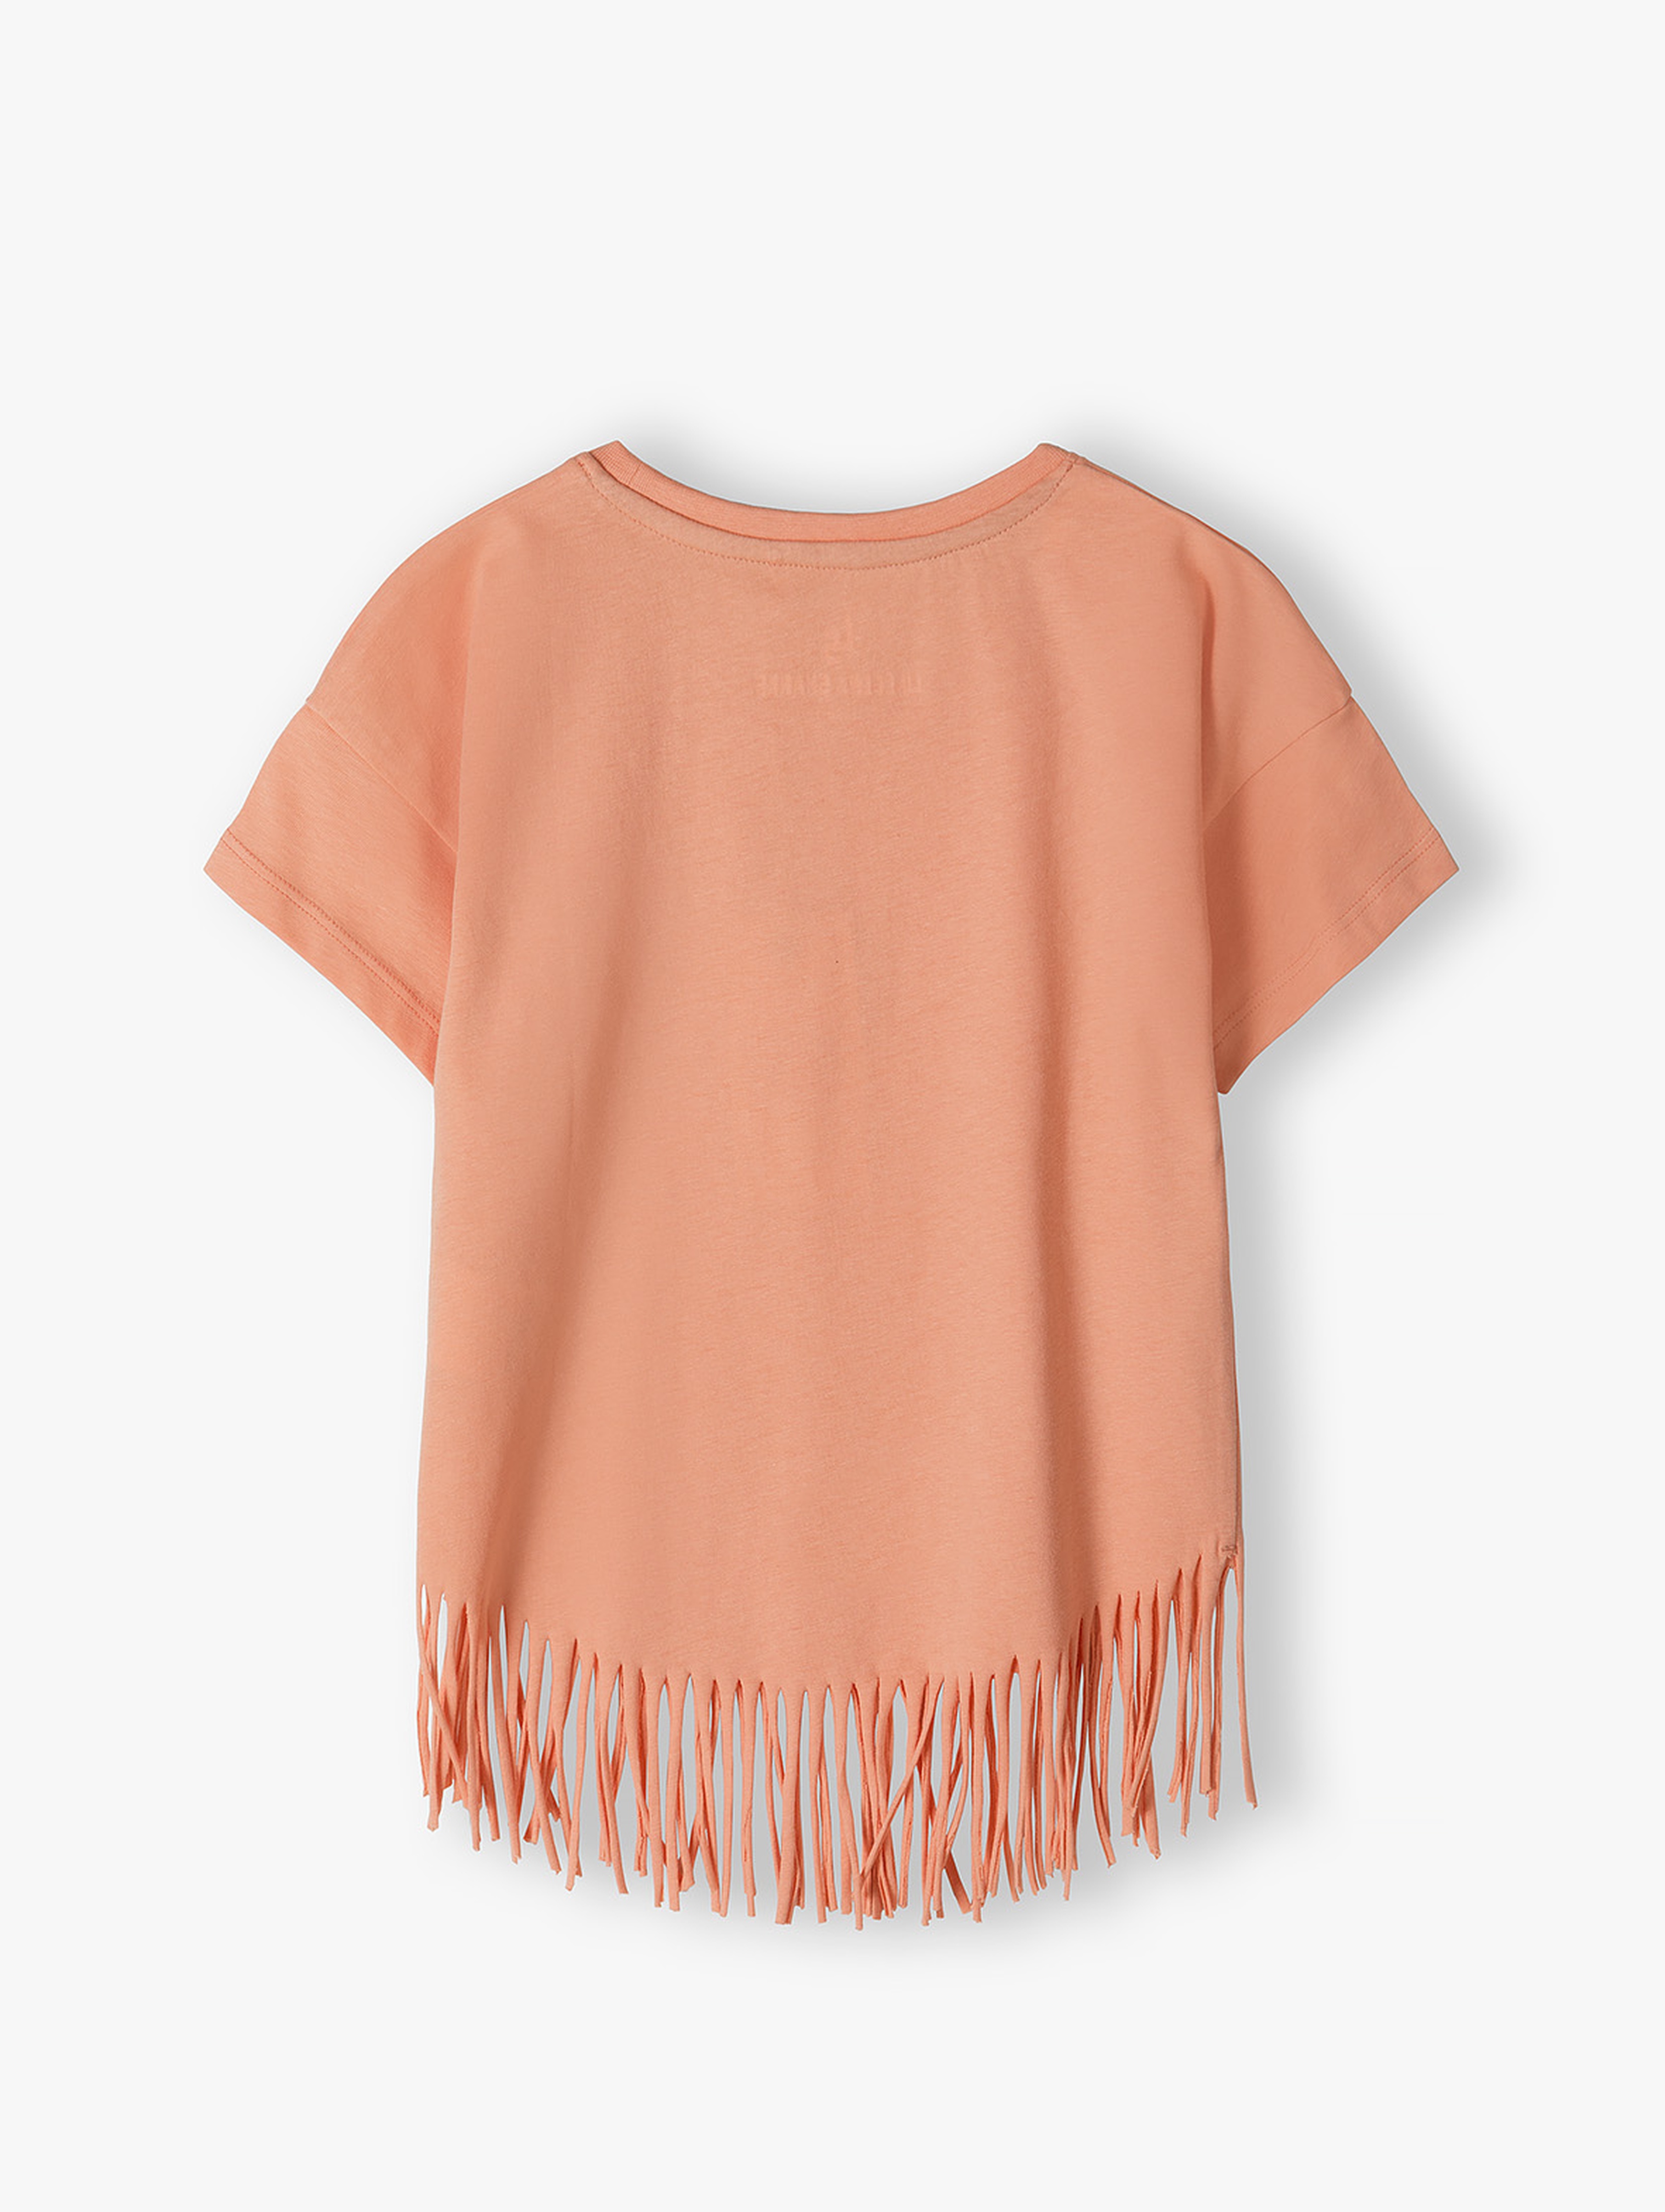 Pomarańczowy t-shirt bawełniany dla dziewczynki z frędzlami